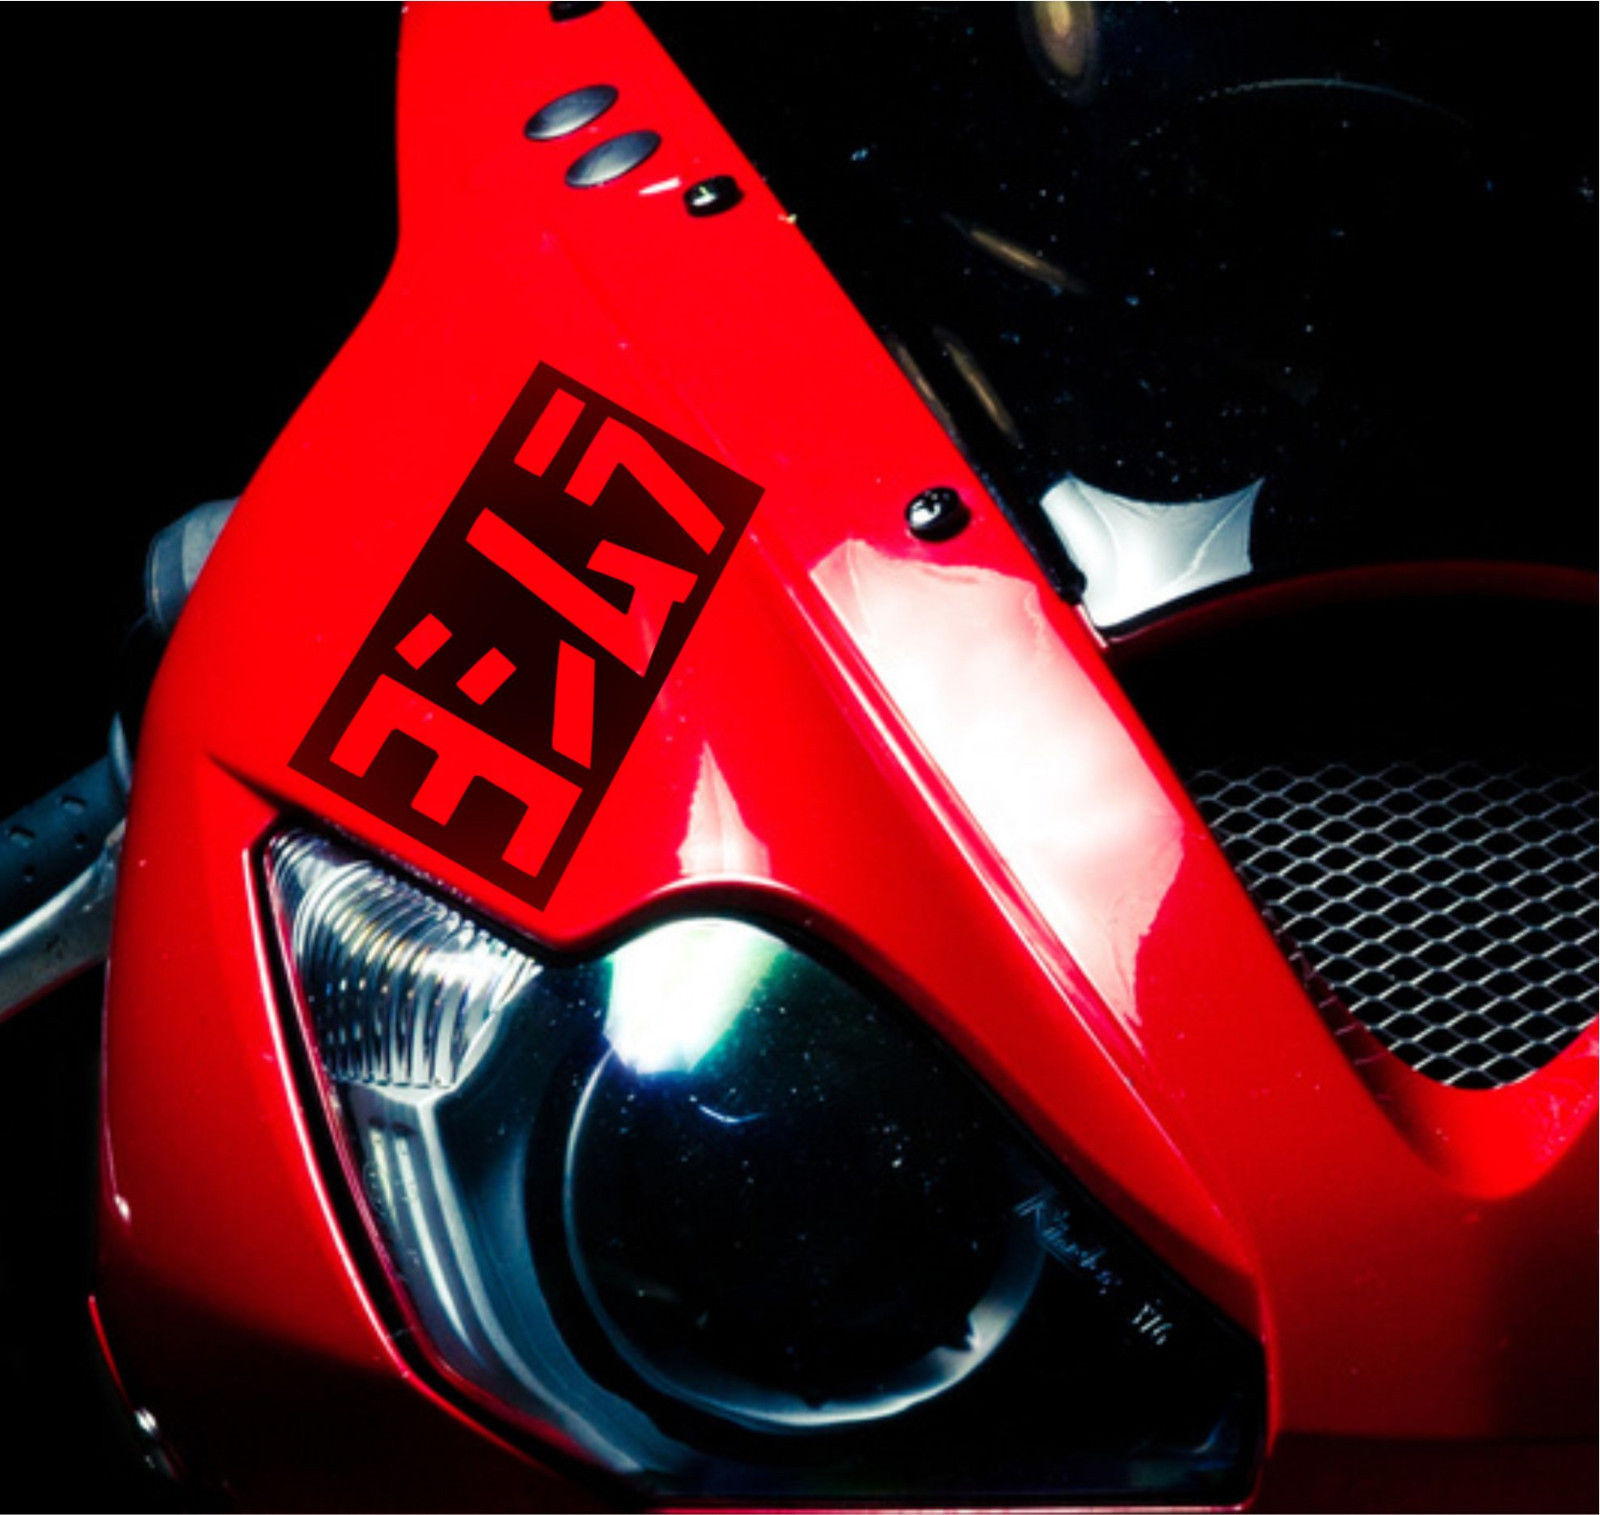 3 x Yoshimura Moto Aufkleber für Verkleidung Helm Aufkleber Motorrad Auspuff